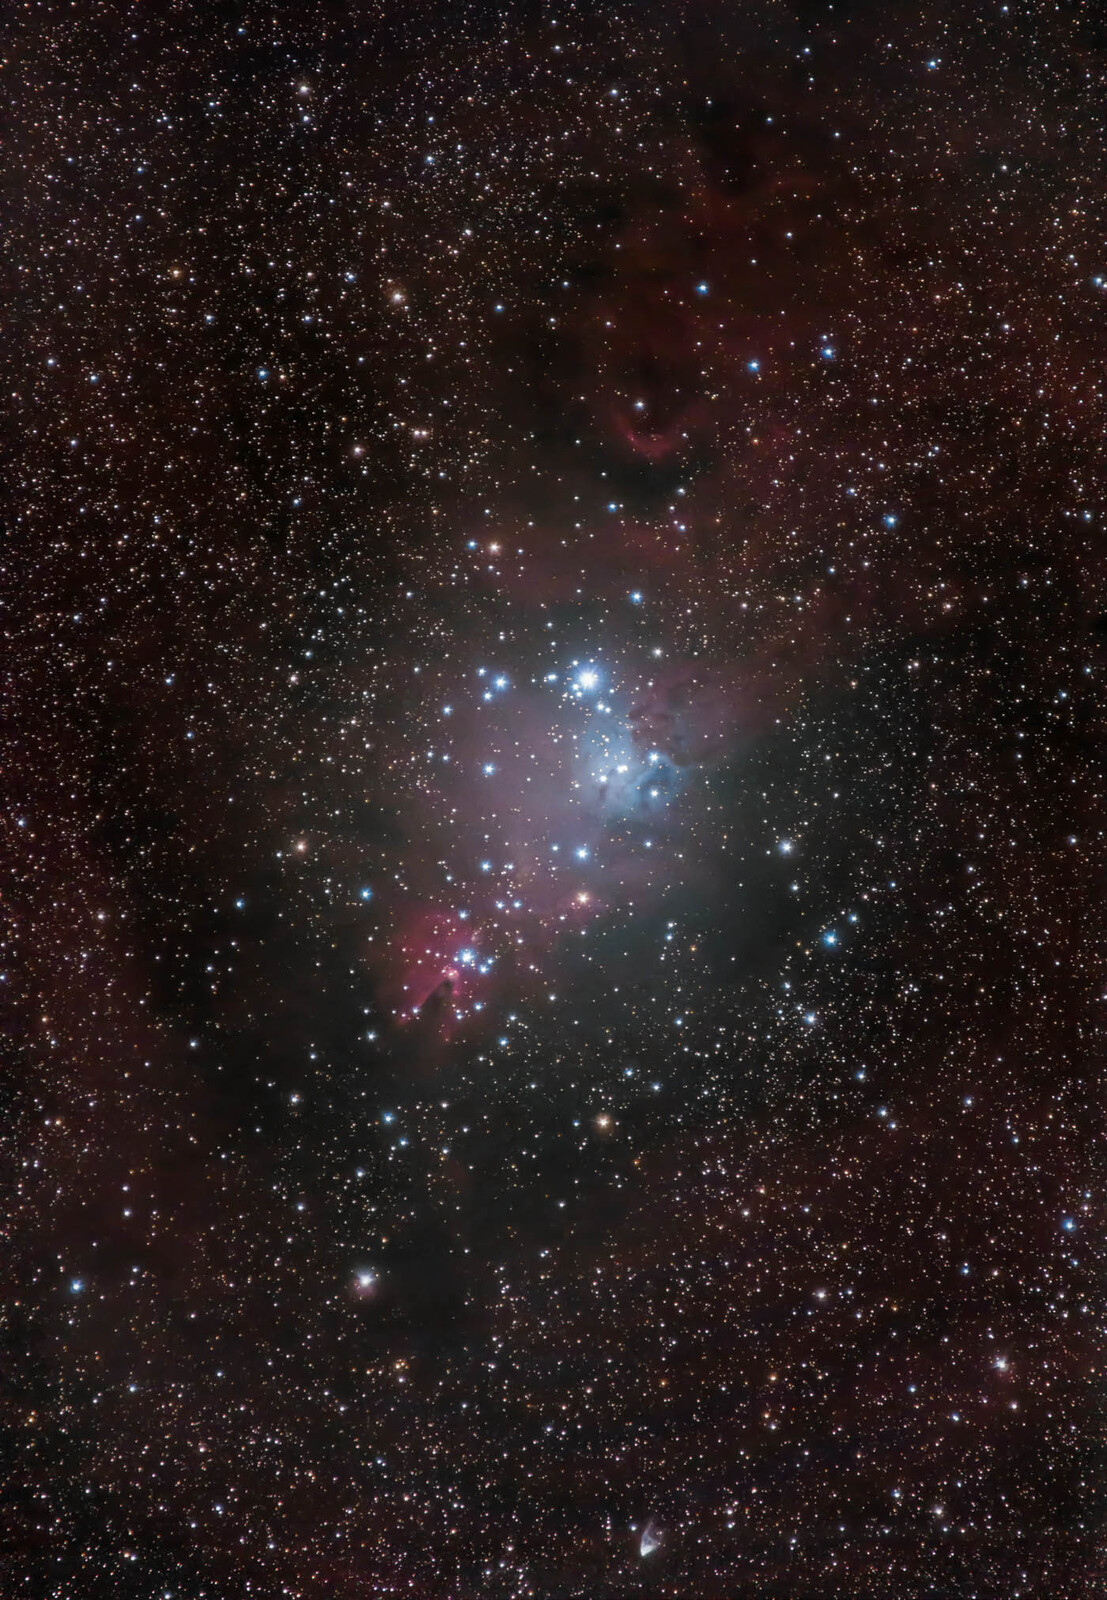 Cone Nebula, Christmas Tree Cluster, and NGC 2261 Hubble's Variable Nebula